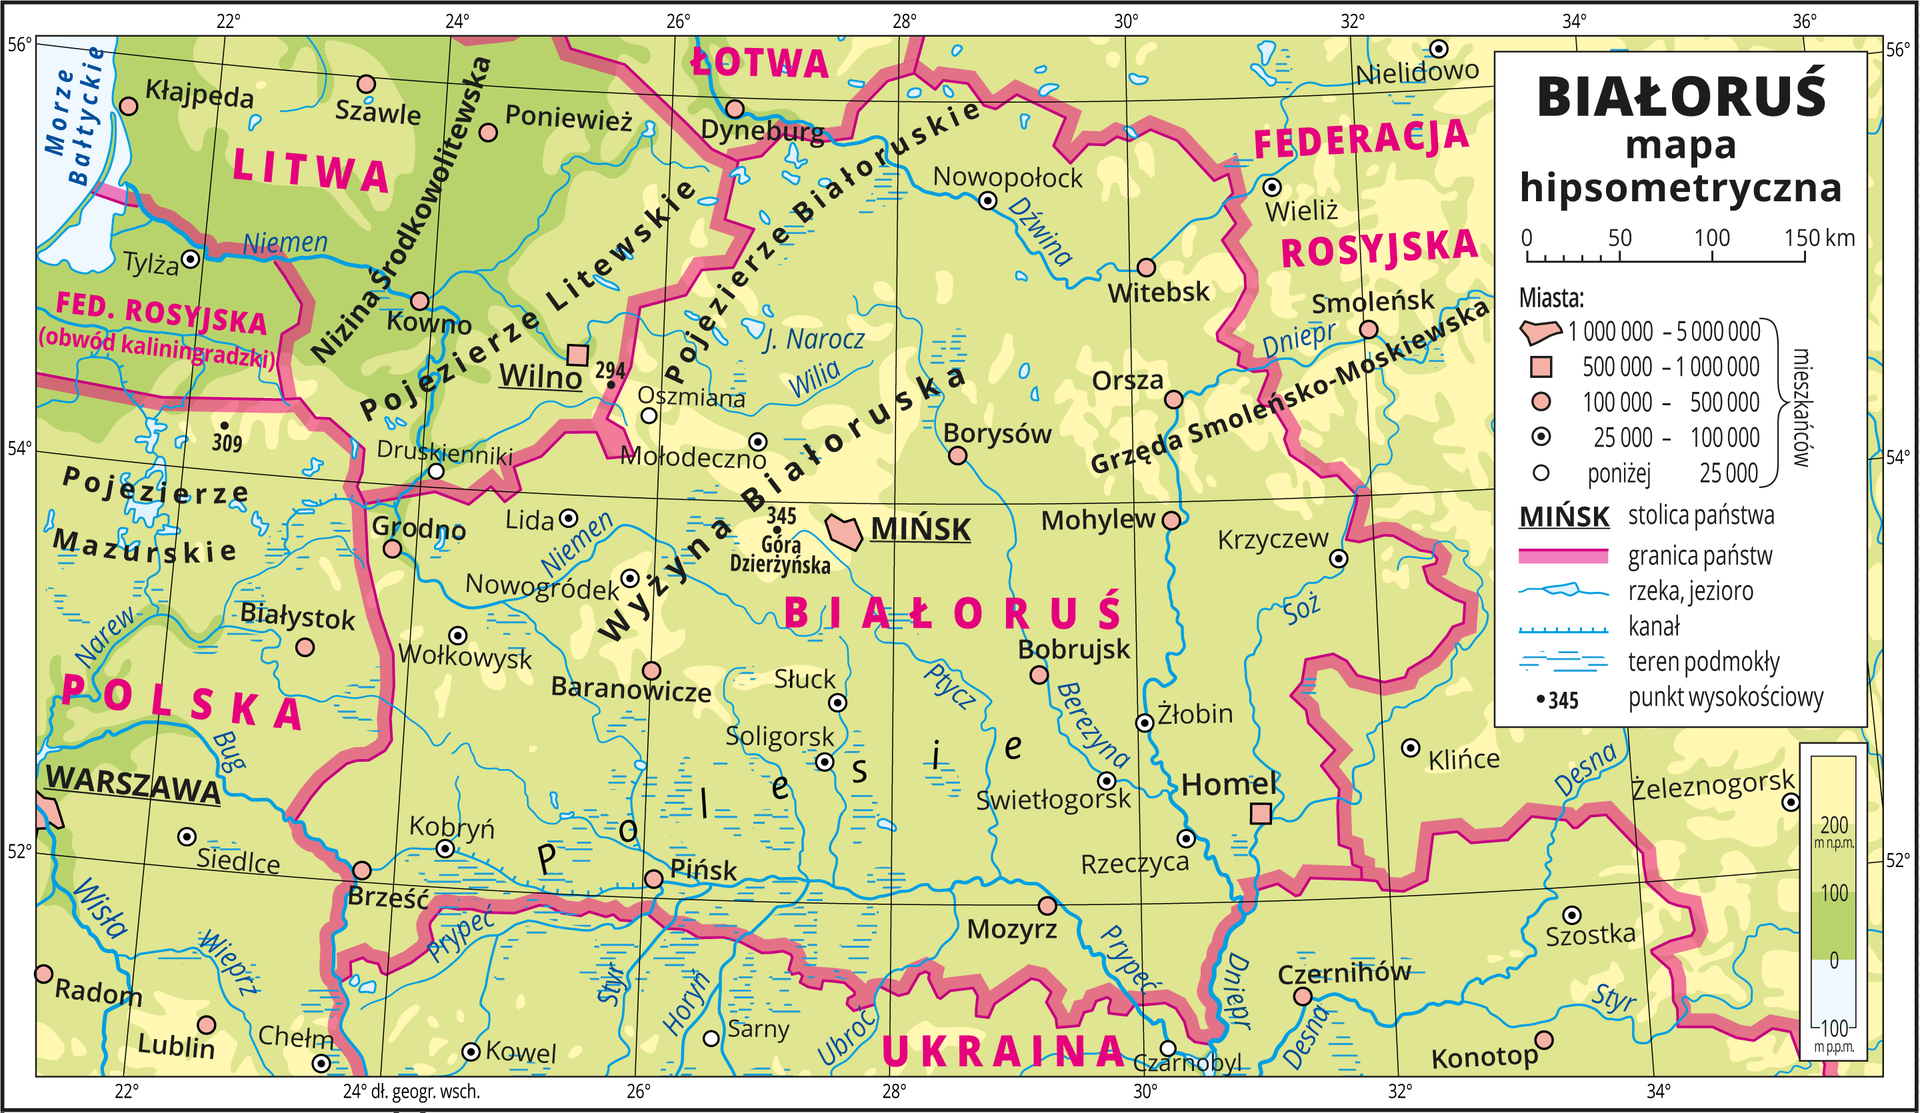 Ilustracja przedstawia mapę hipsometryczną Białorusi. W obrębie lądów występują obszary w kolorze zielonym i żółtym. W lewym górnym rogu mapy fragment Morza Bałtyckiego zaznaczono kolorem niebieskim i opisano. Na mapie opisano nazwy nizin i wyżyn, rzek i jezior. Oznaczono i opisano główne miasta. Oznaczono czarnymi kropkami i opisano punkty wysokościowe. Różową wstążką przedstawiono granice państw. Kolorem czerwonym opisano państwa sąsiadujące z Białorusią. Mapa pokryta jest równoleżnikami i południkami. Dookoła mapy w białej ramce opisano współrzędne geograficzne co dwa stopnie. W legendzie umieszczono i opisano znaki użyte na mapie.